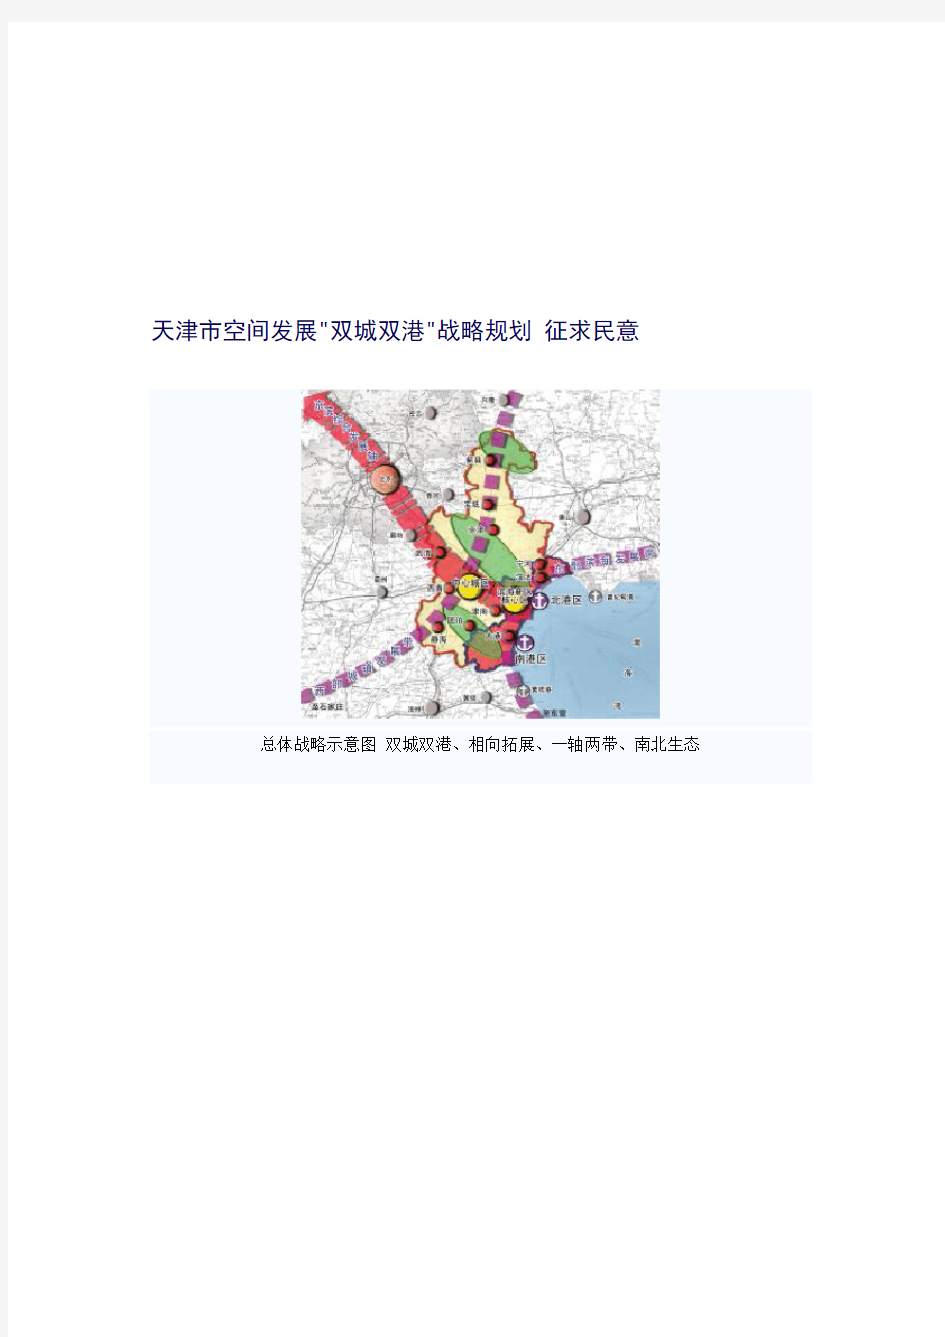 天津市空间发展双城双港战略整体规划